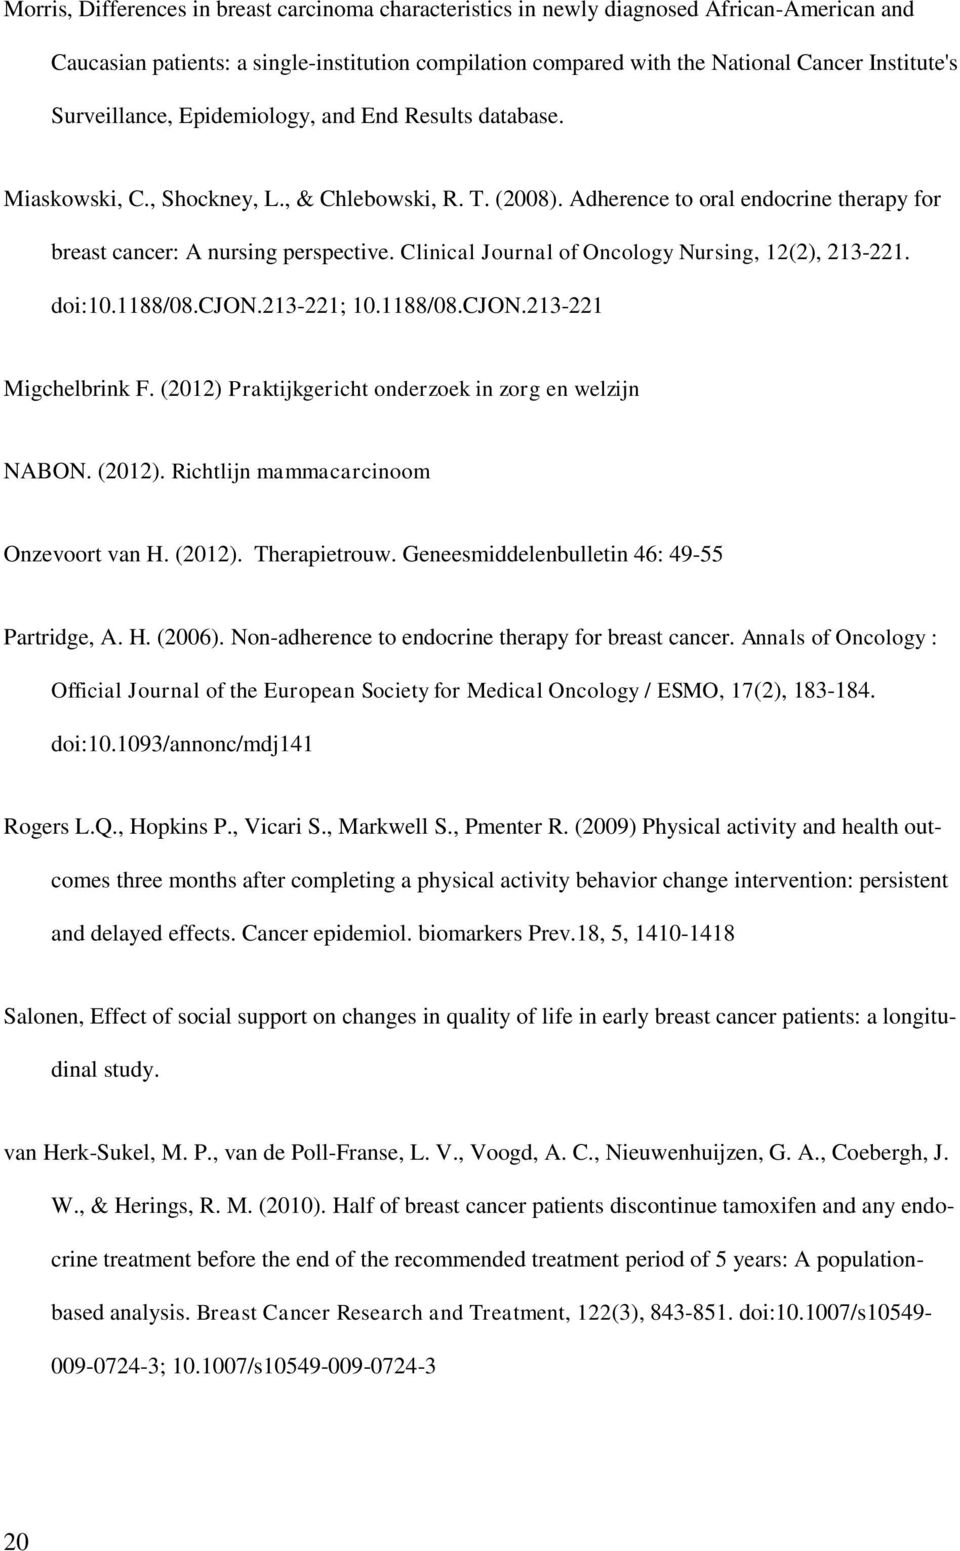 Clinical Journal of Oncology Nursing, 12(2), 213-221. doi:10.1188/08.cjon.213-221; 10.1188/08.CJON.213-221 Migchelbrink F. (2012) Praktijkgericht onderzoek in zorg en welzijn NABON. (2012). Richtlijn mammacarcinoom Onzevoort van H.